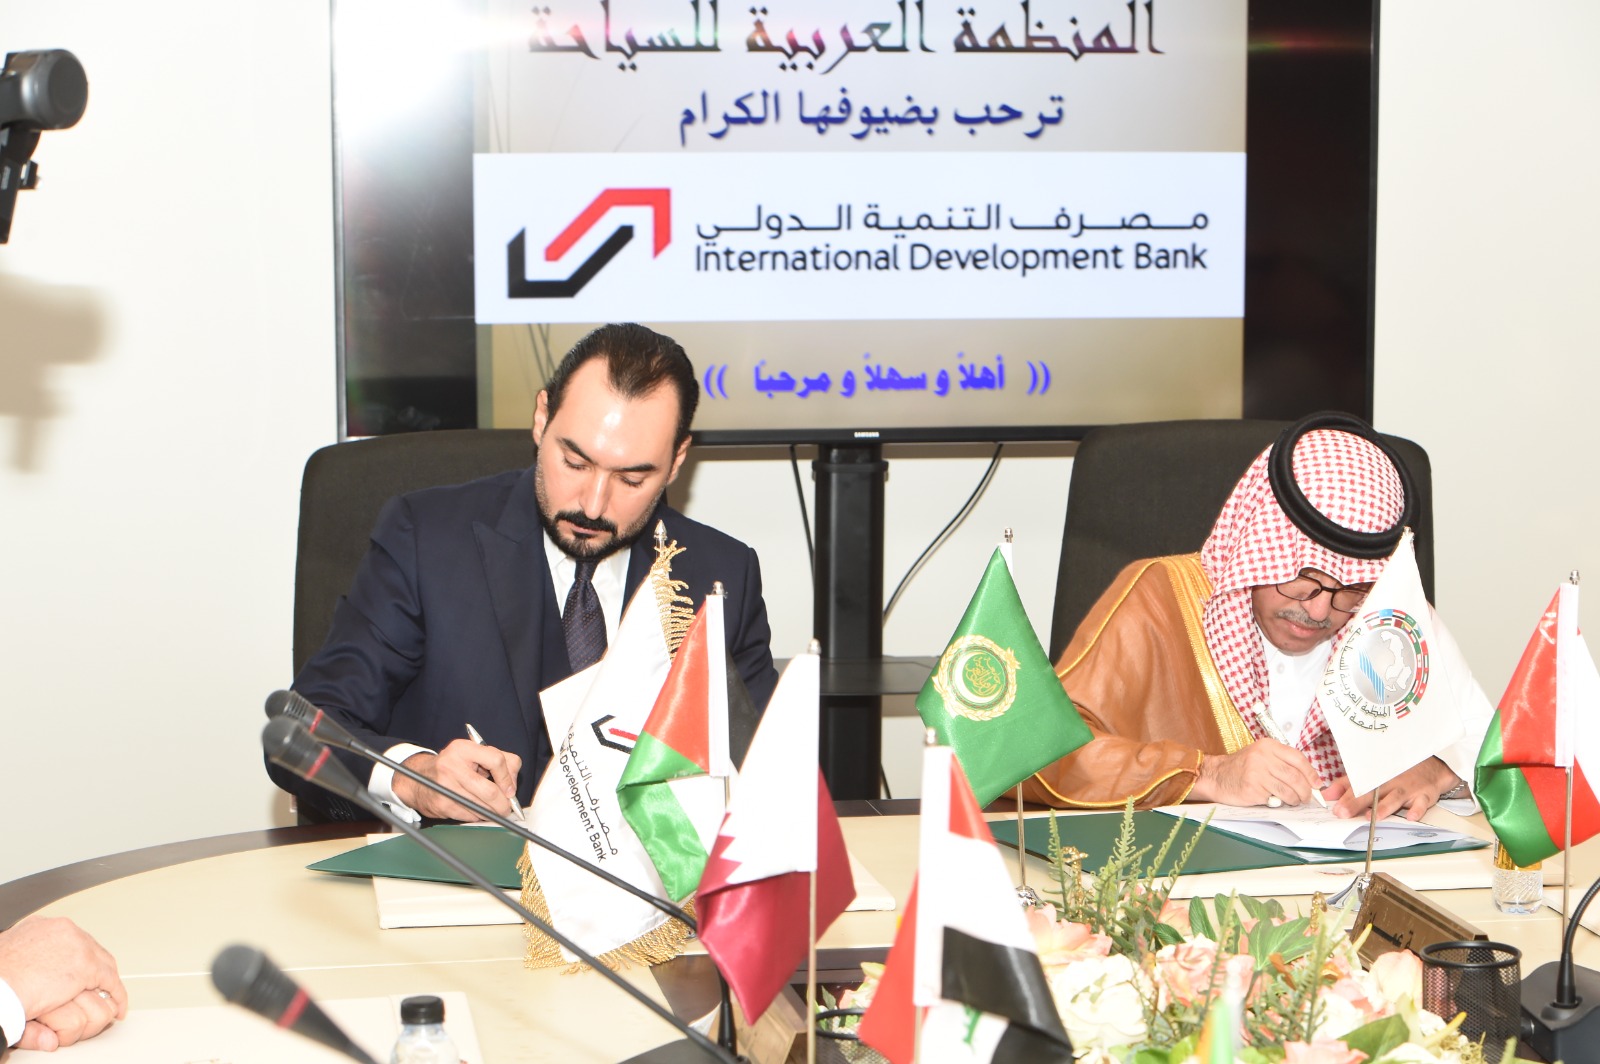  المنظمة العربية للسياحة  ومصرف التنمية الدولي يوقعا اتفاقية تعاون تخدم تنمية السياحة على مستوى الوطن العربي